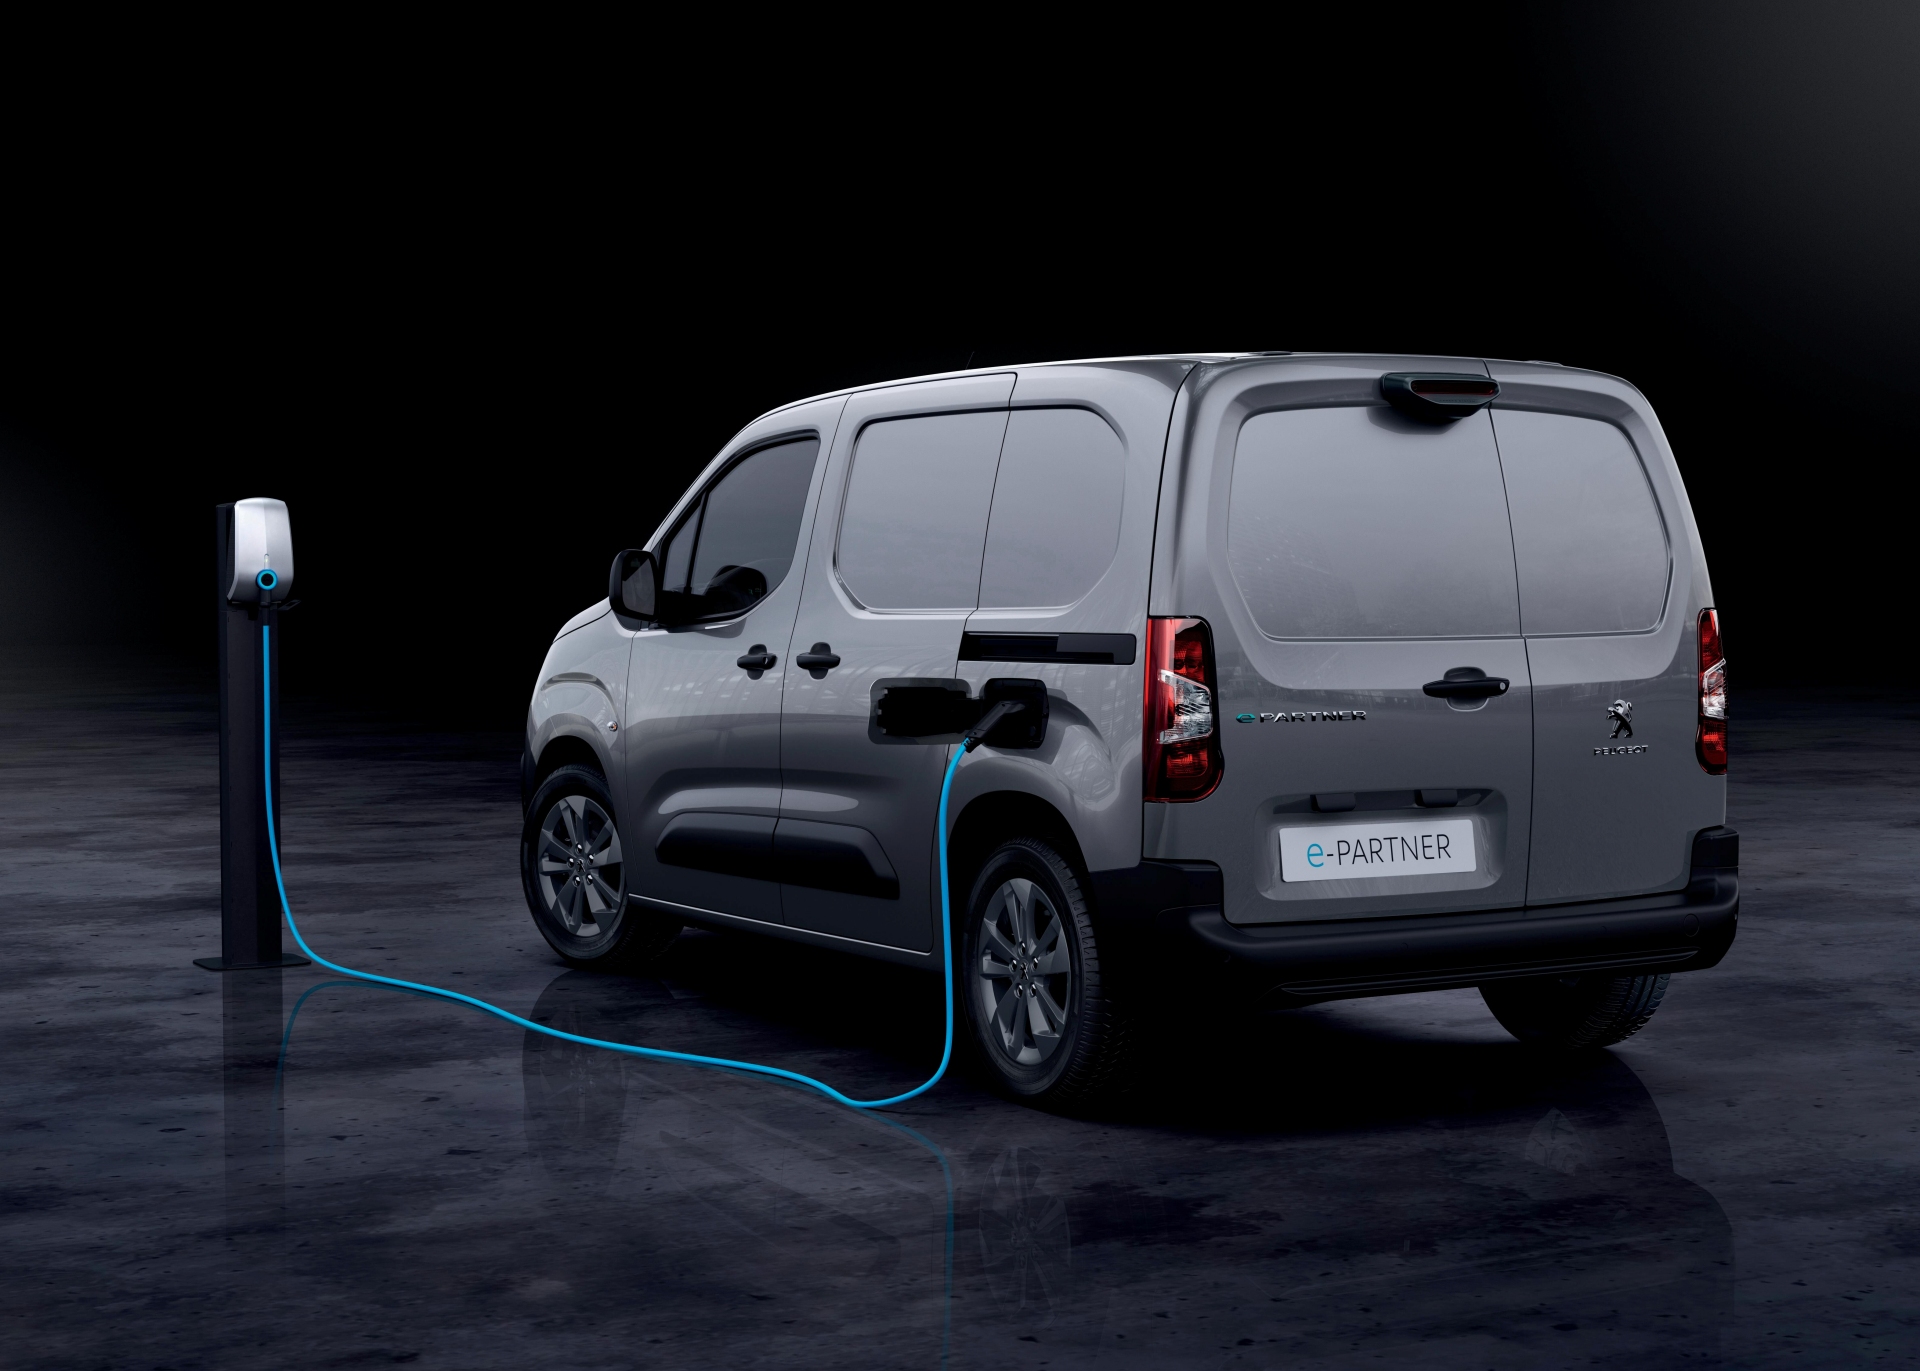 La Peugeot e-Rifter ya está a la venta: una furgoneta eléctrica de